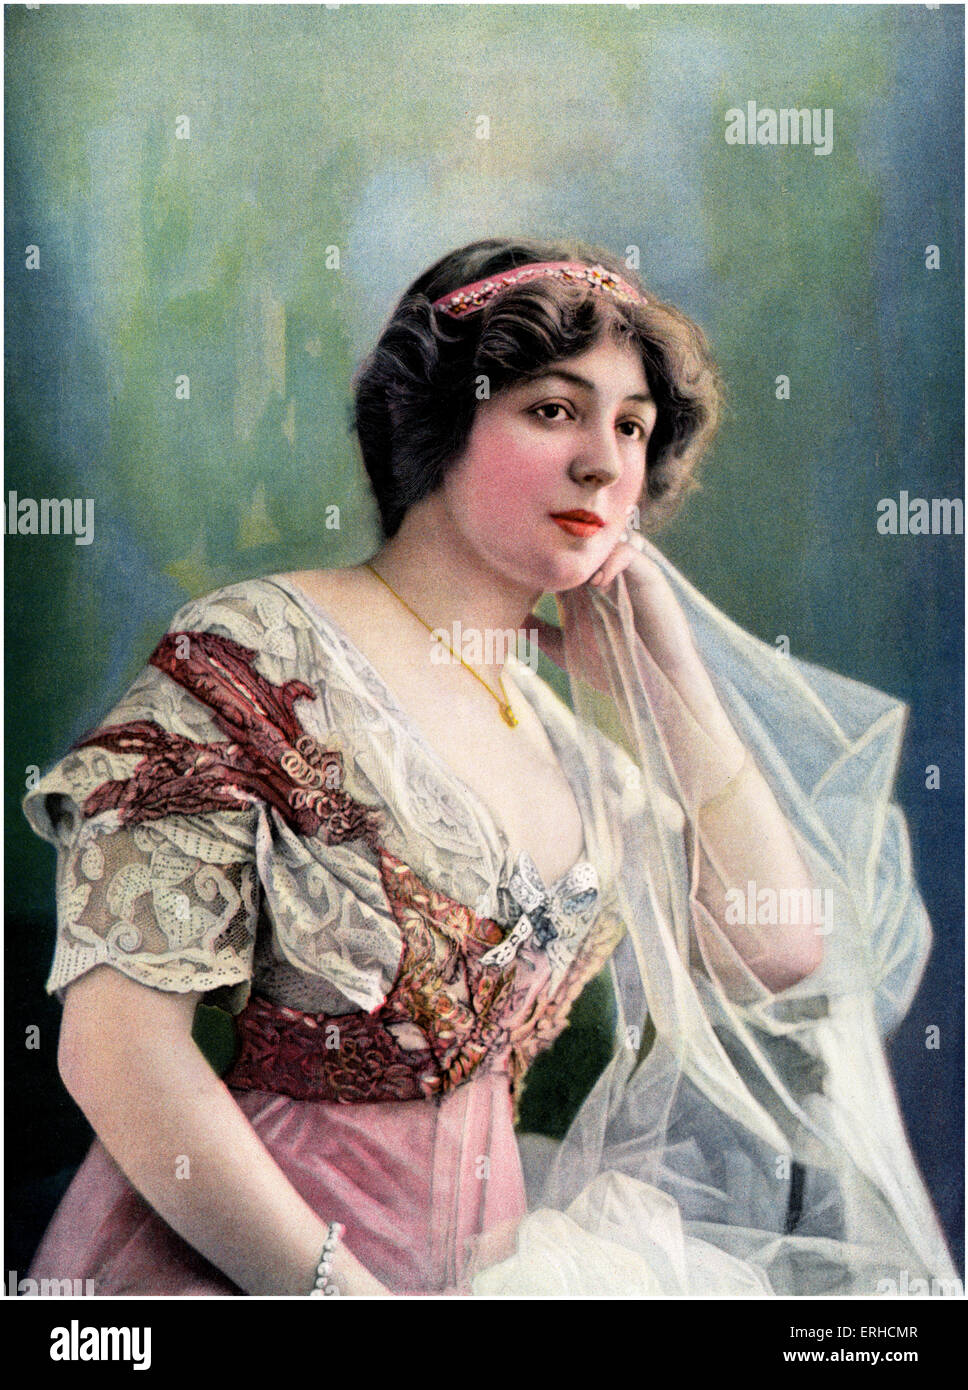 Marthe Regnier, französische Schauspielerin, des Vaudeville-Theaters. Le Theatre, 1908. 26. November 1880 - 30. August 1967. Stockfoto